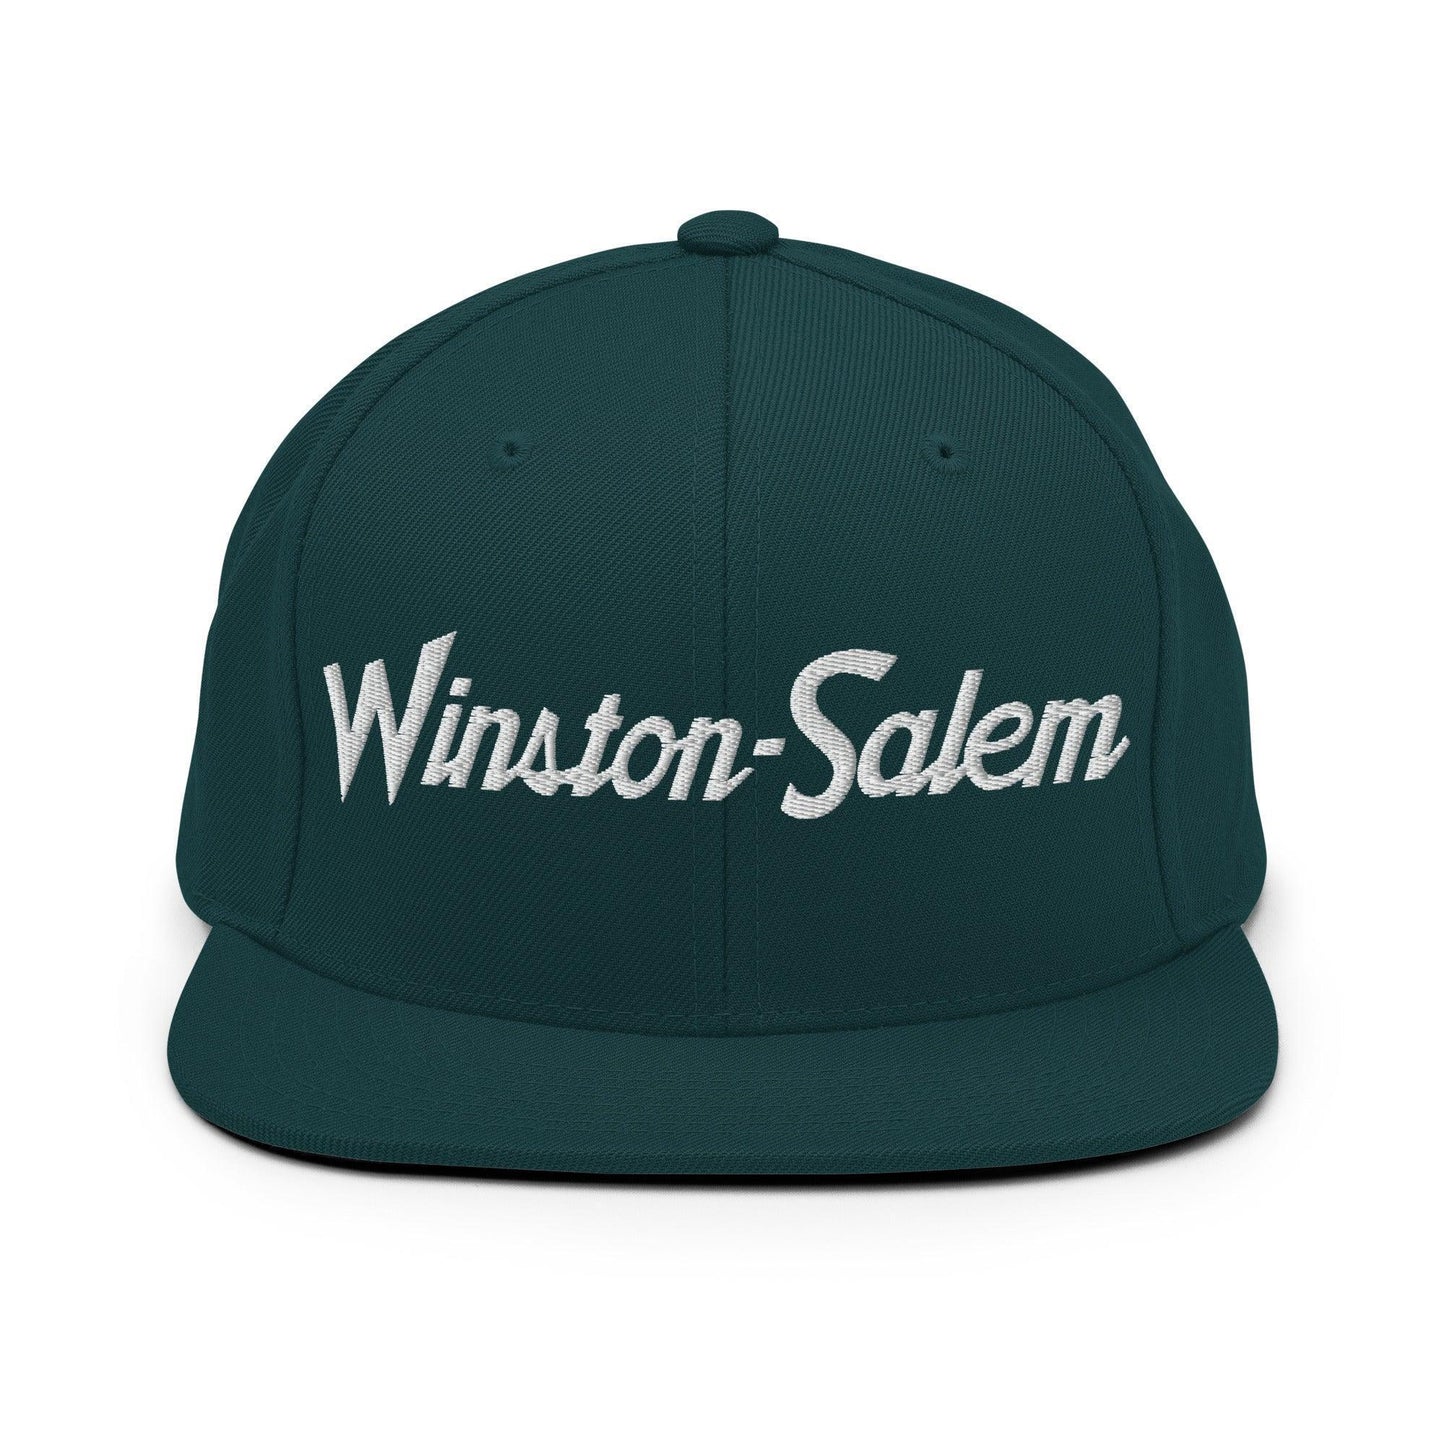 Winston-Salem Script Snapback Hat Spruce